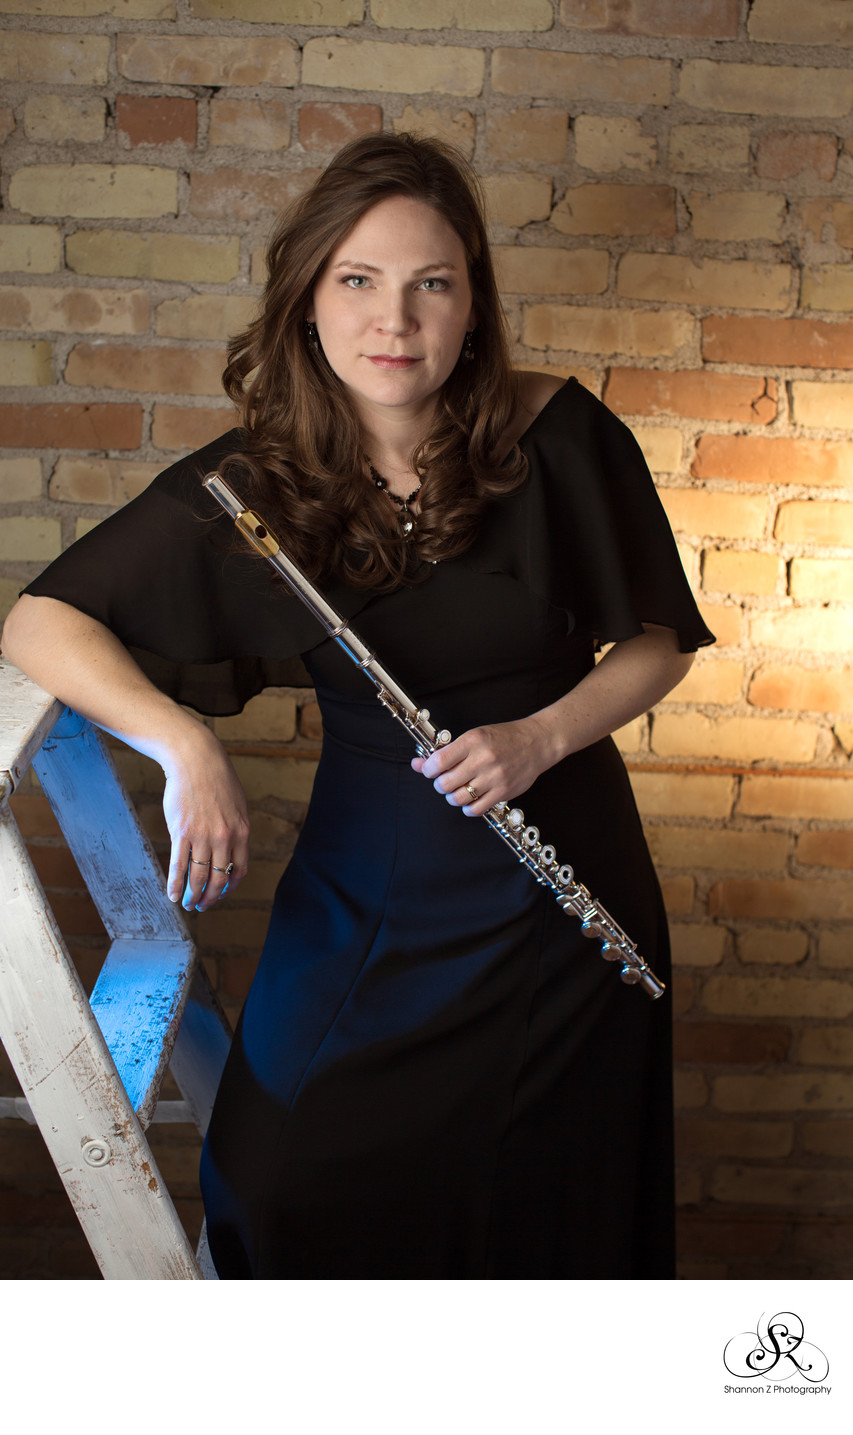 Flute player portrait